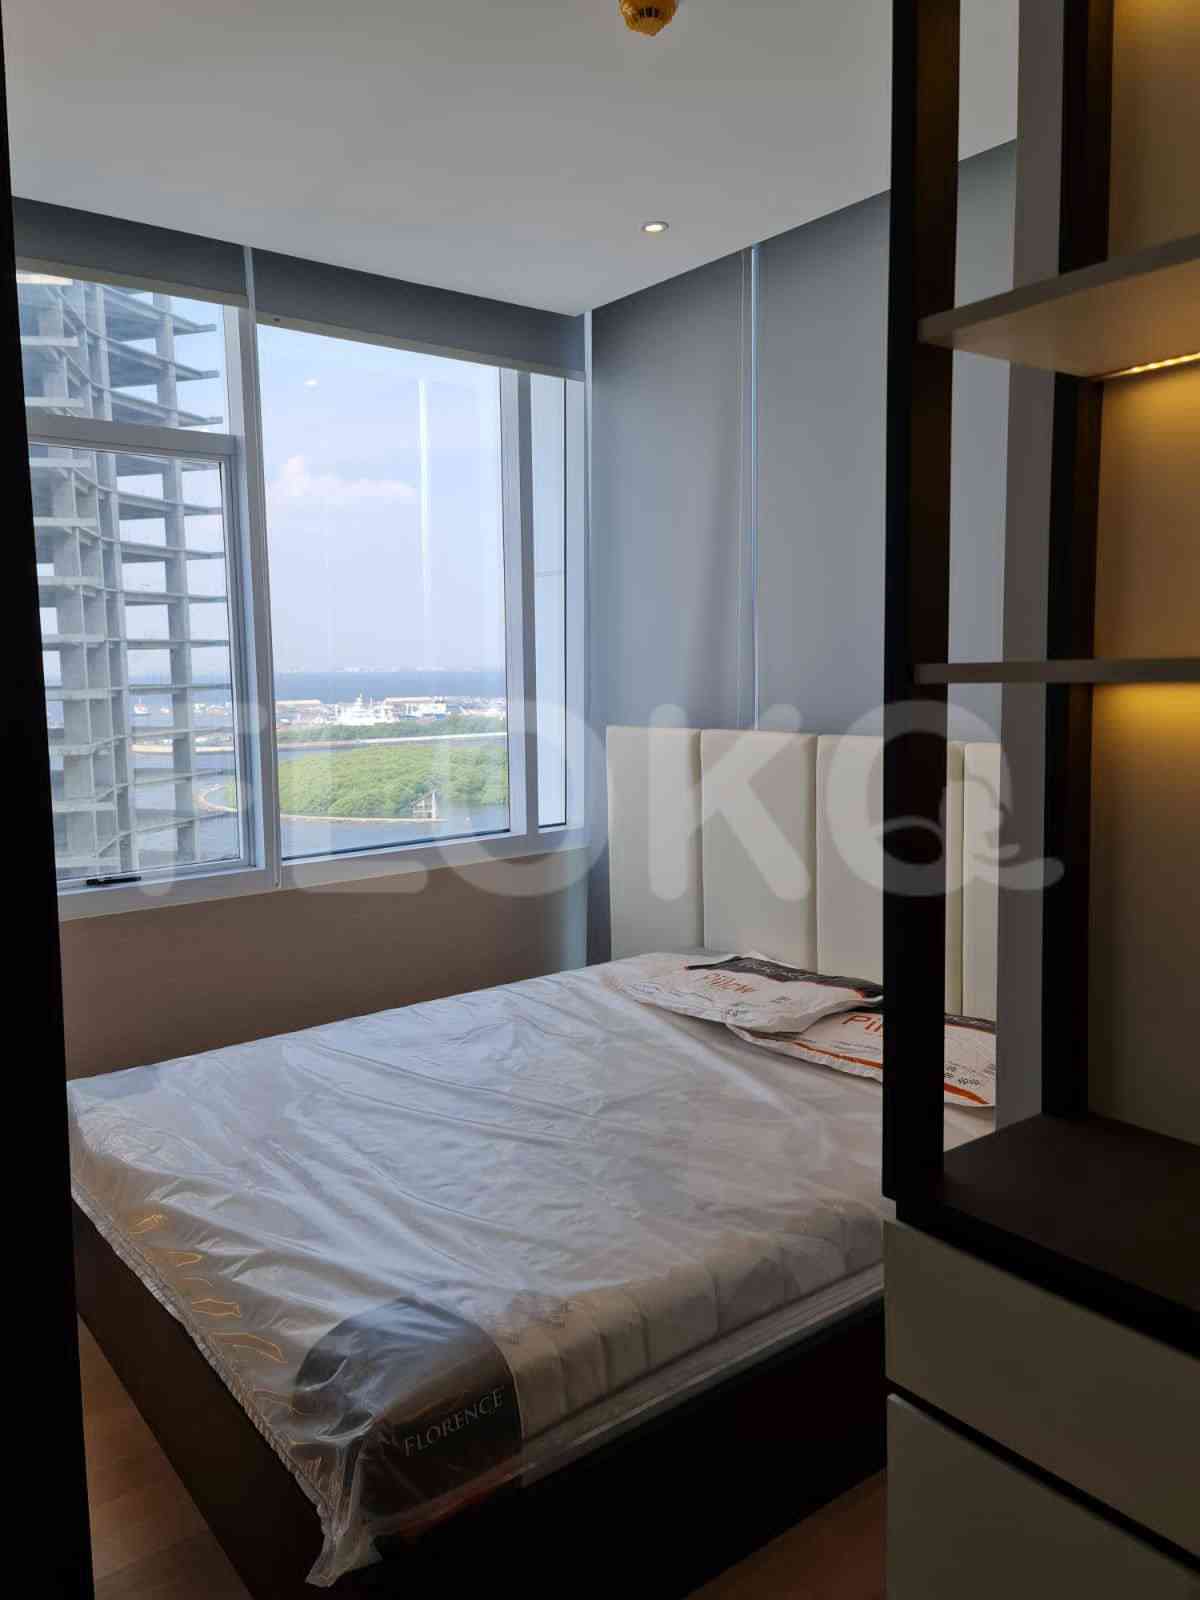 4 Bedroom on 21st Floor for Rent in Regatta - fplc82 2